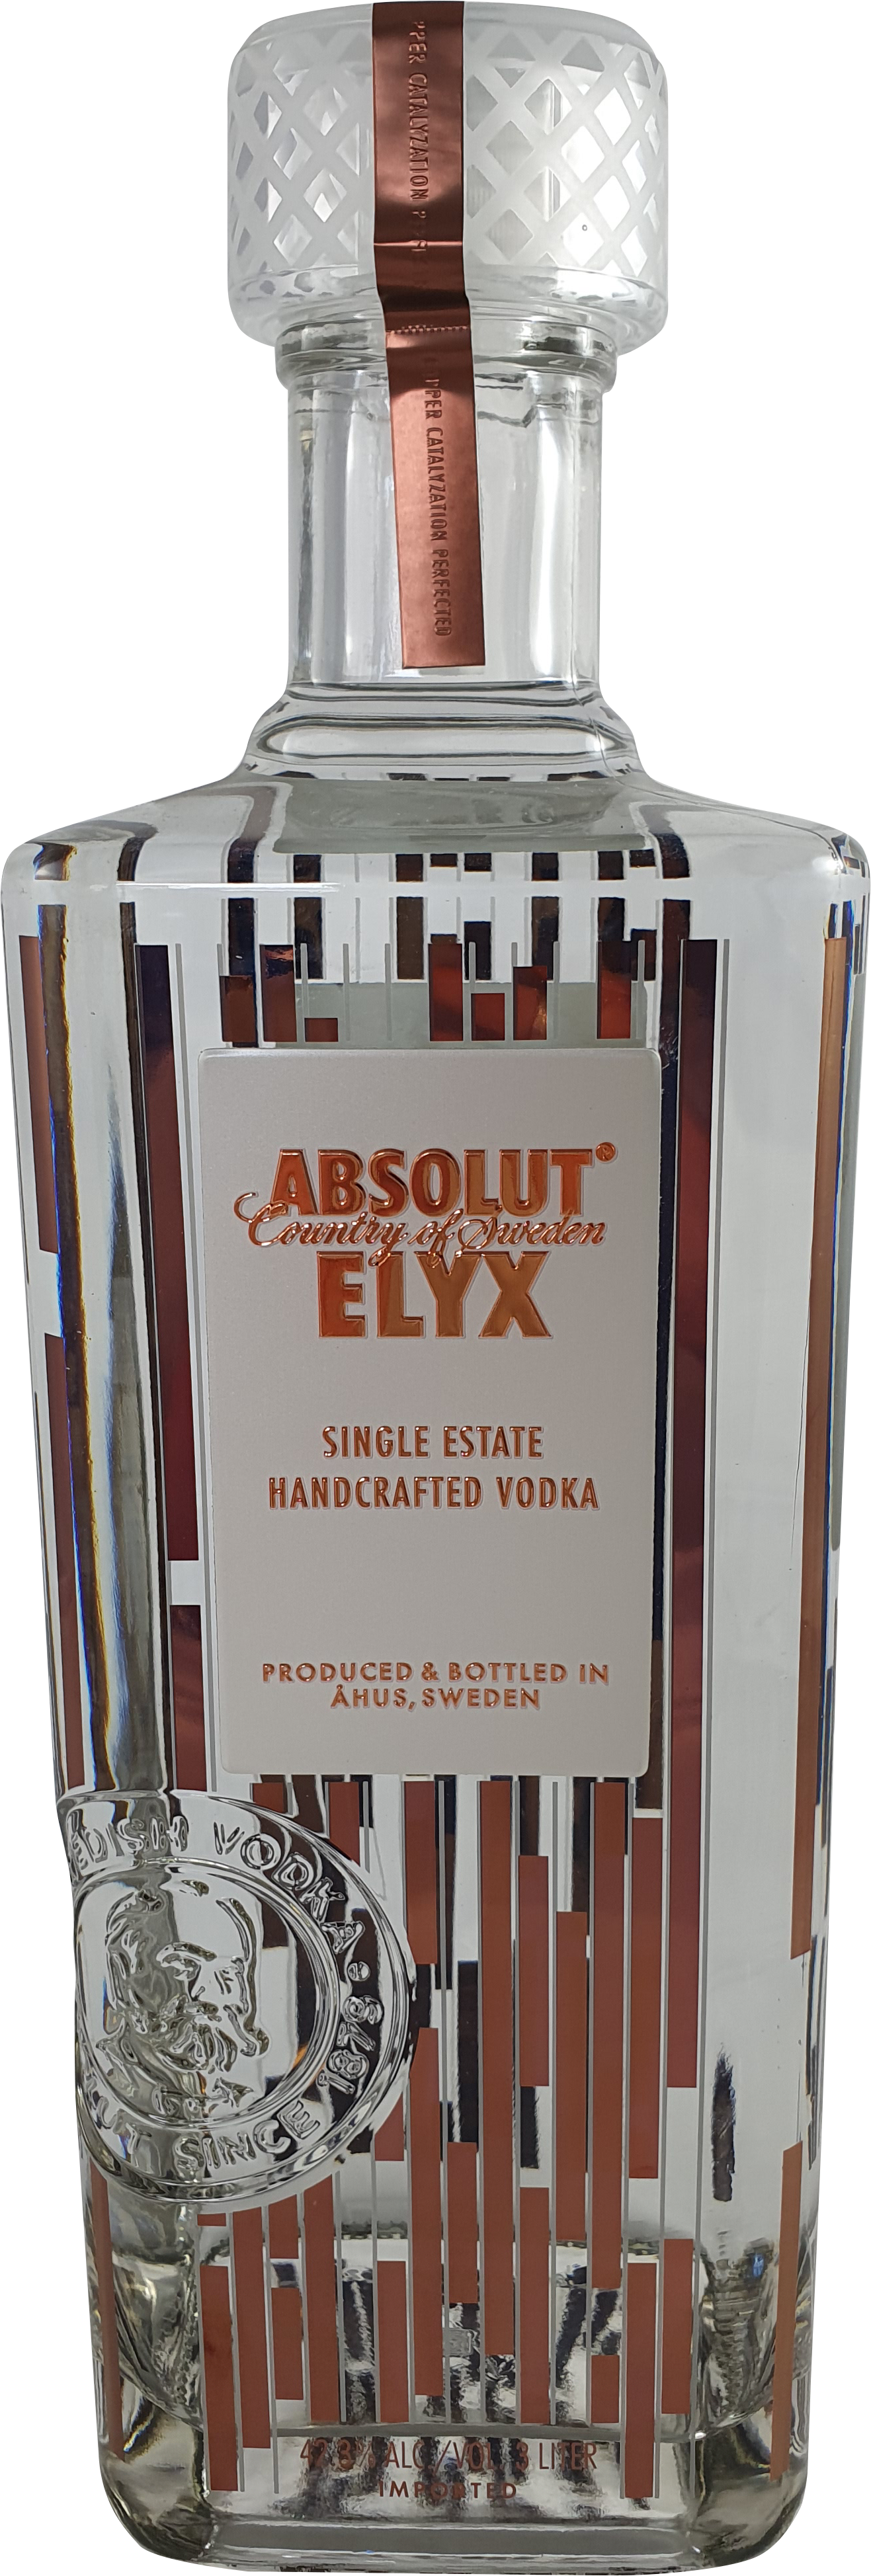 Absolut Vodka Elyx 40% 3l